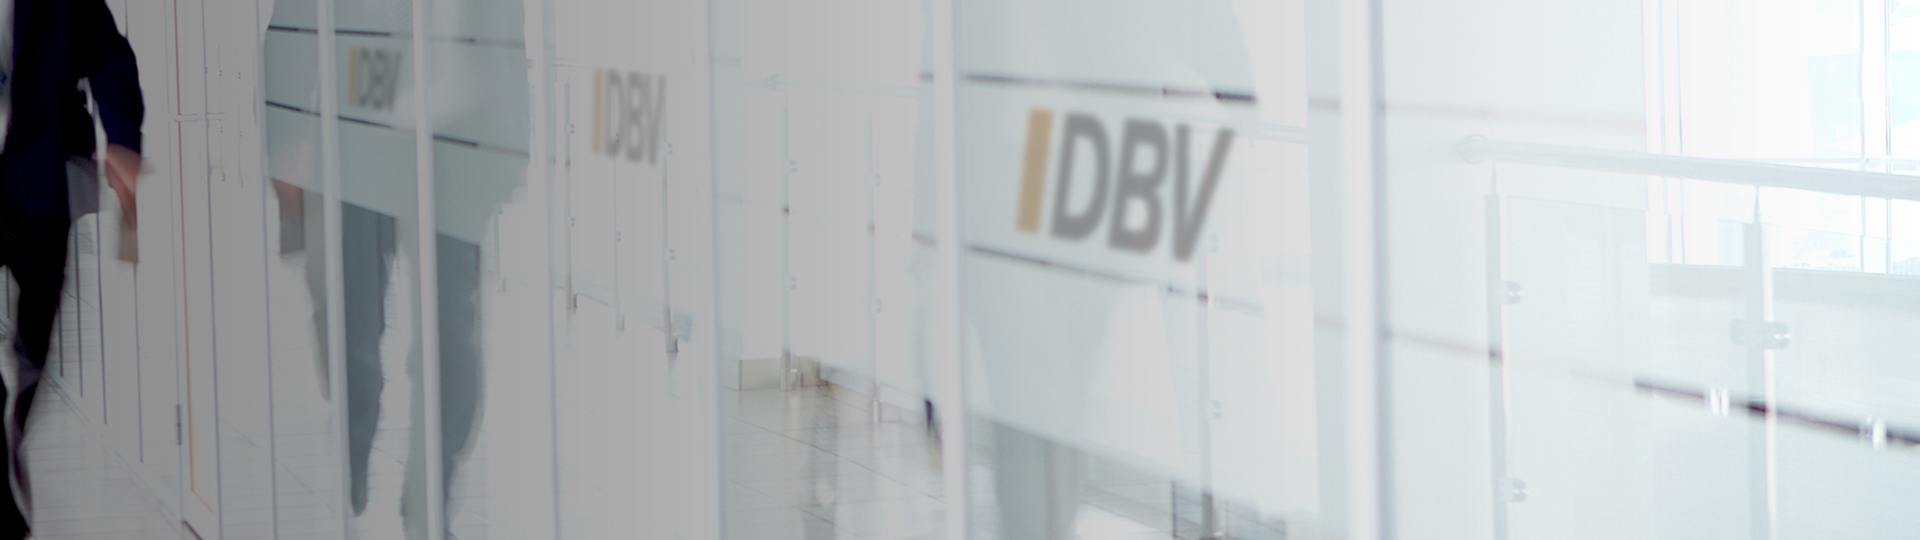 Dienstunfähigkeitsversicherung | DBV Hannover Hornig & Knoch oHG 